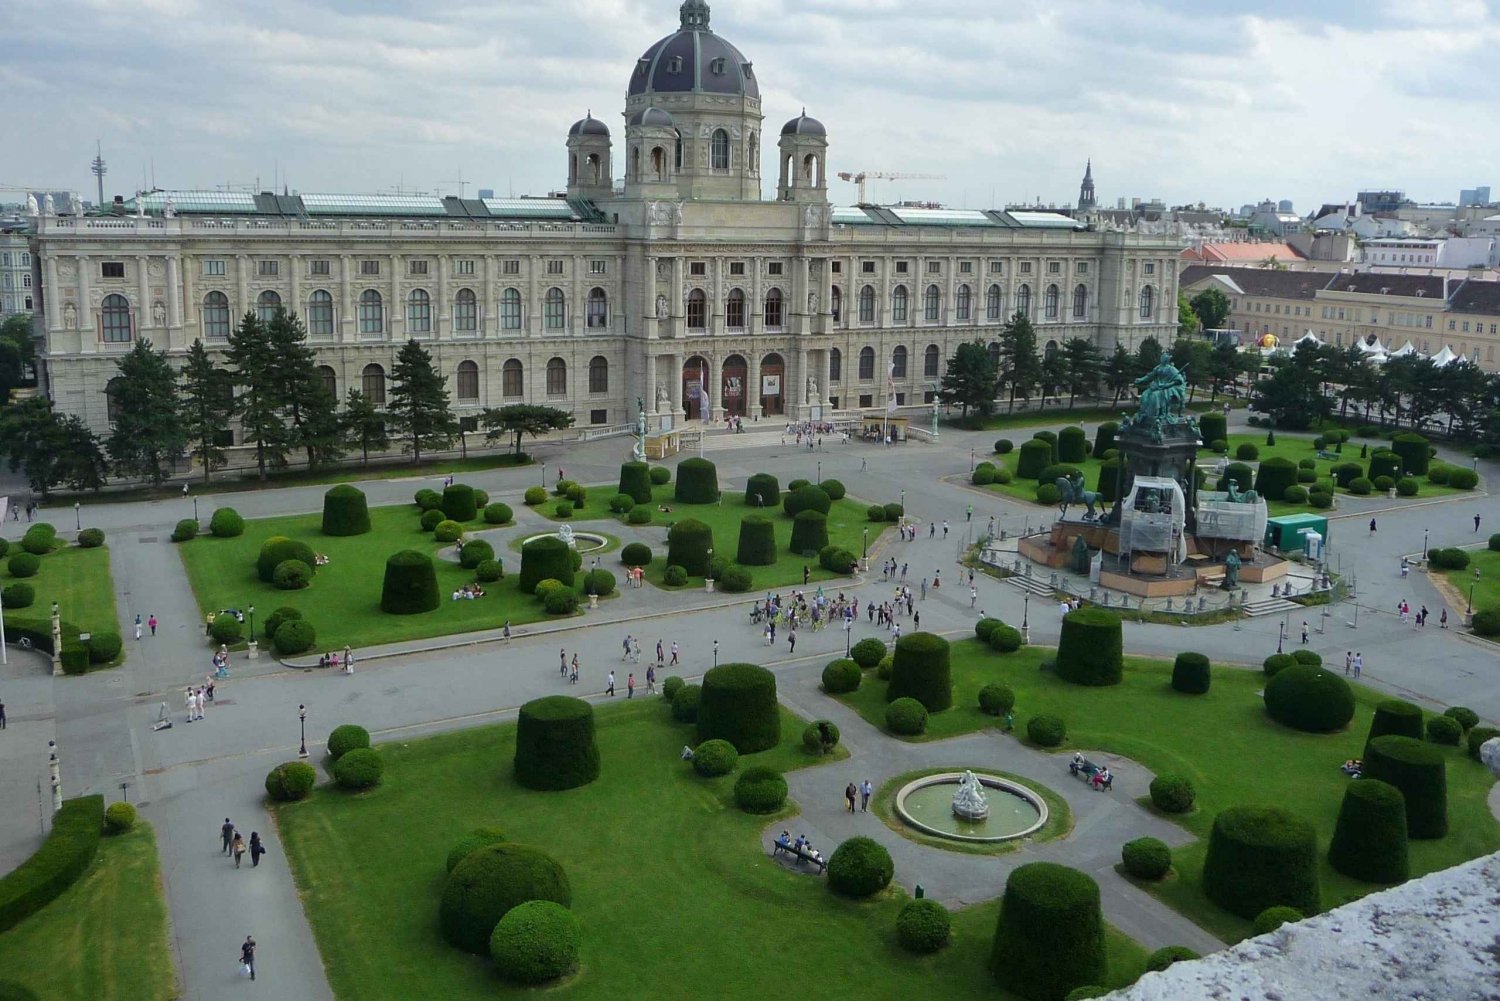 Wien till fots: Upptäck de 10 bästa sevärdheterna